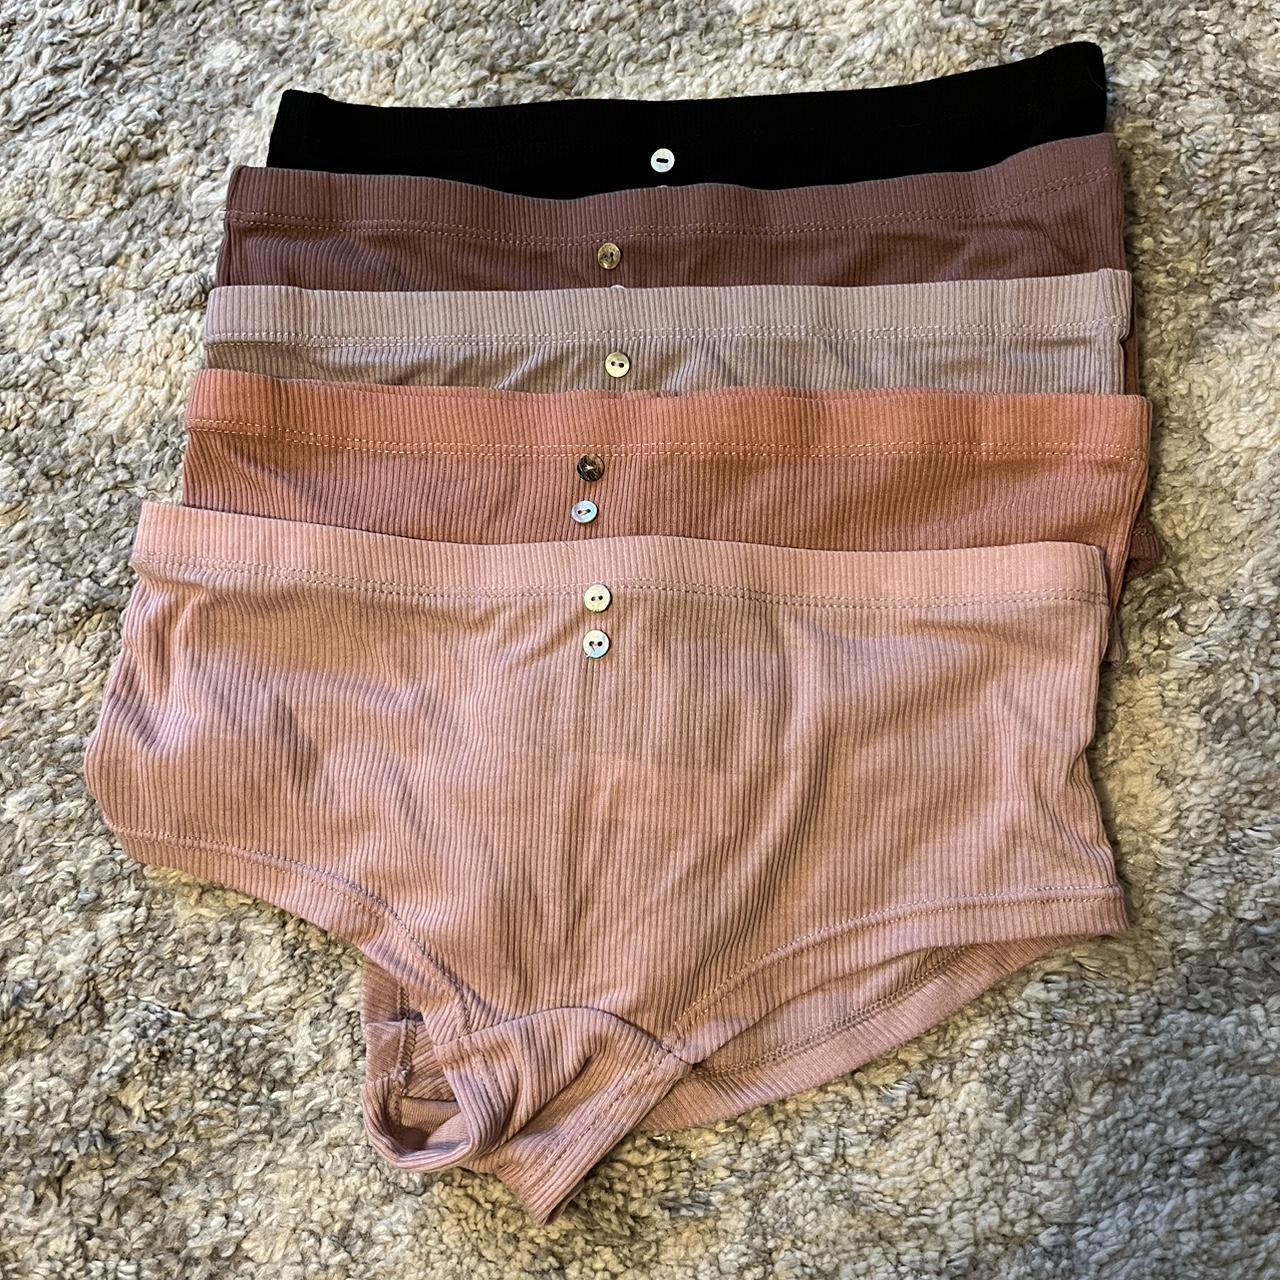 5 pairs of brand new never worn Danskin underwear! - Depop